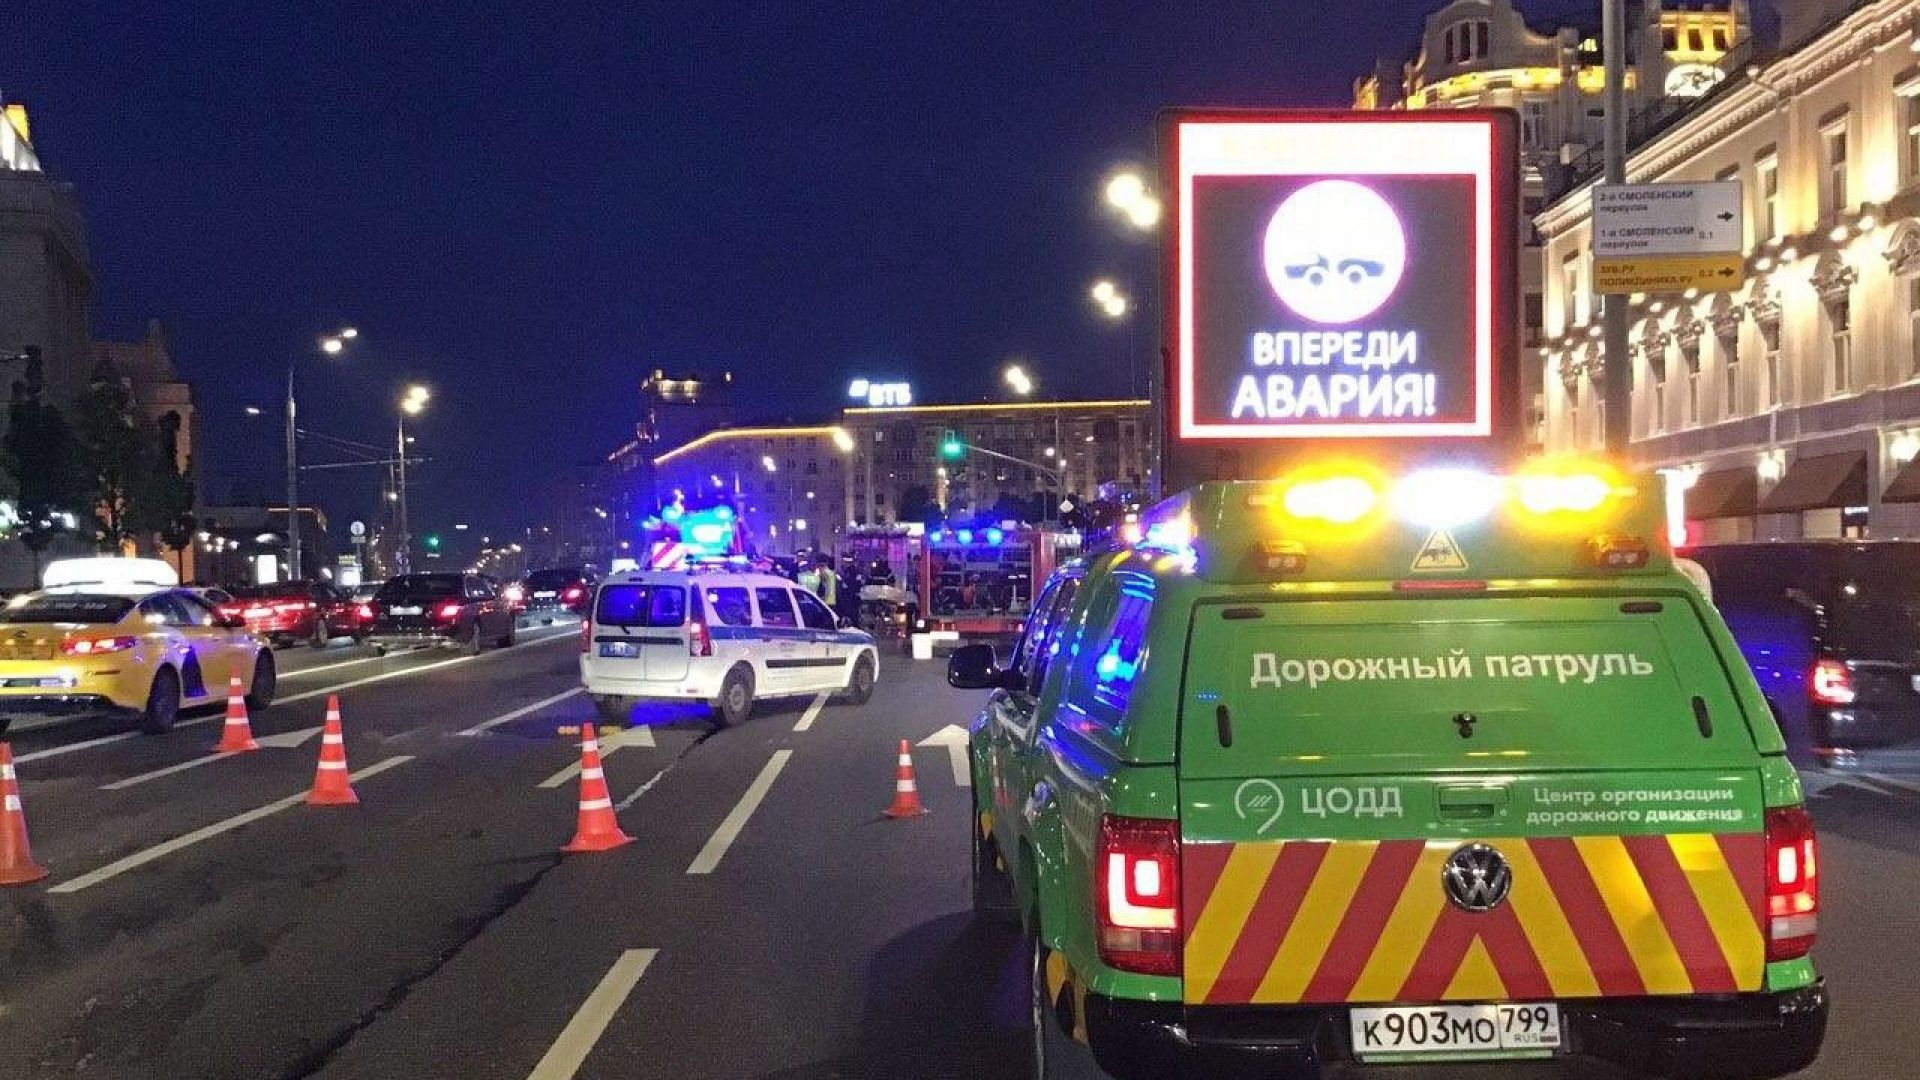 Известният руски актьор Михаил Ефремов катастрофира пиян а при инцидента